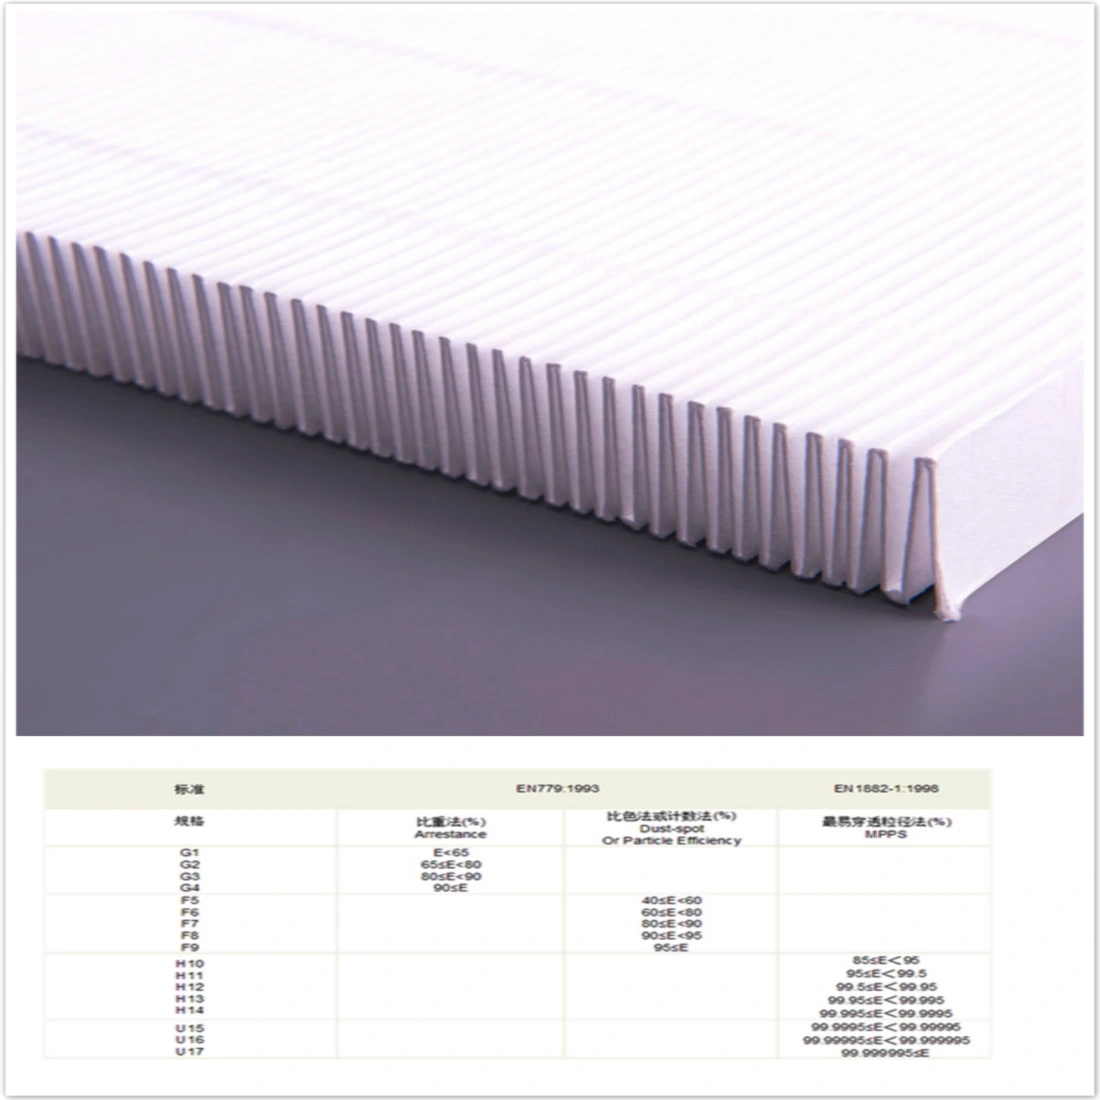 Filter mat air filter mat filter roll G4 thickness 20 mm from 1 x 1 m